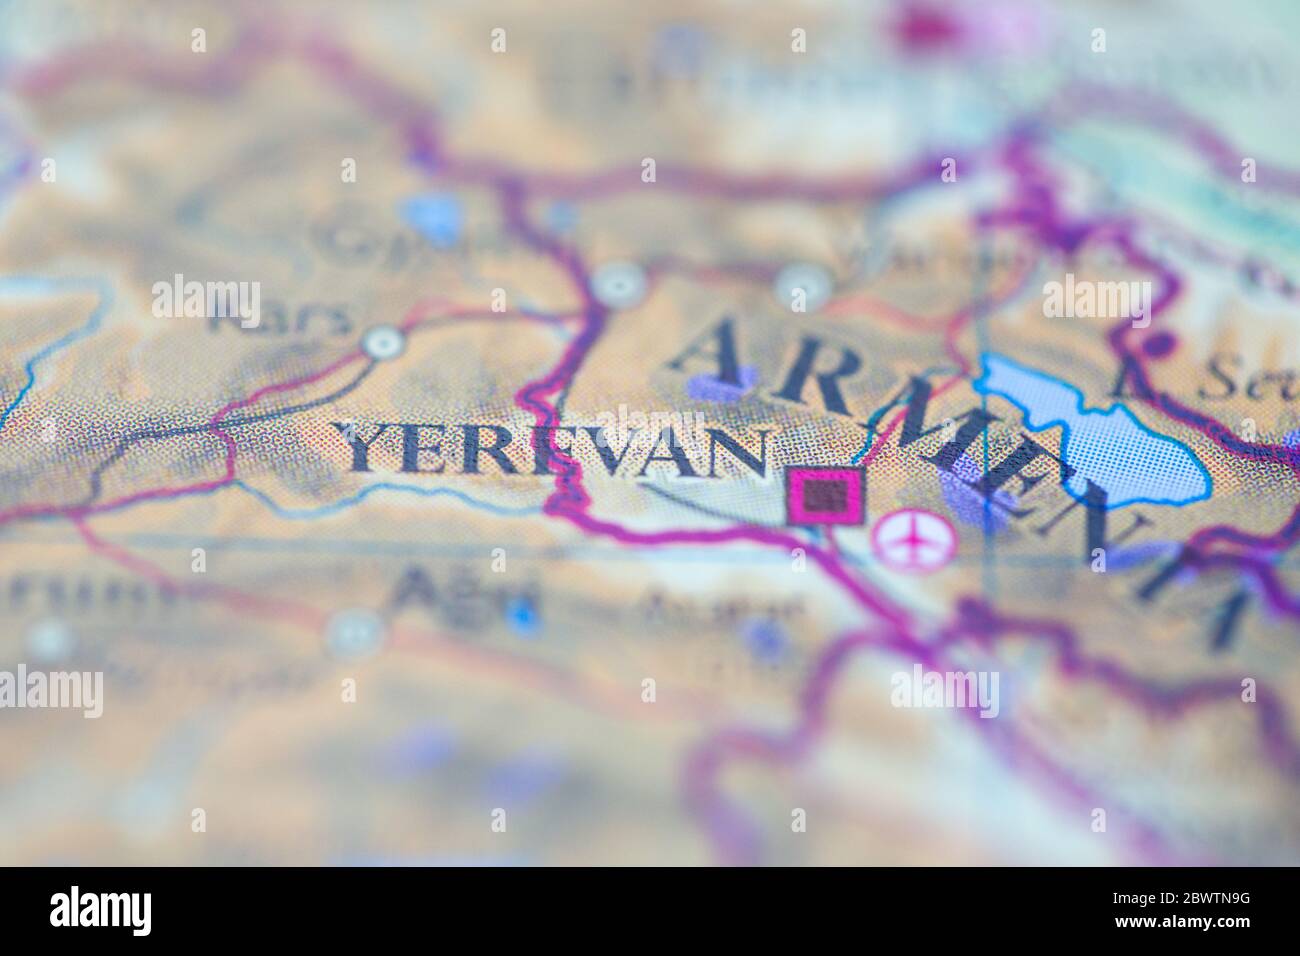 Profundidad de campo reducida se centra en la ubicación del mapa geográfico de Ereván ciudad Armenia continente europeo en atlas Foto de stock